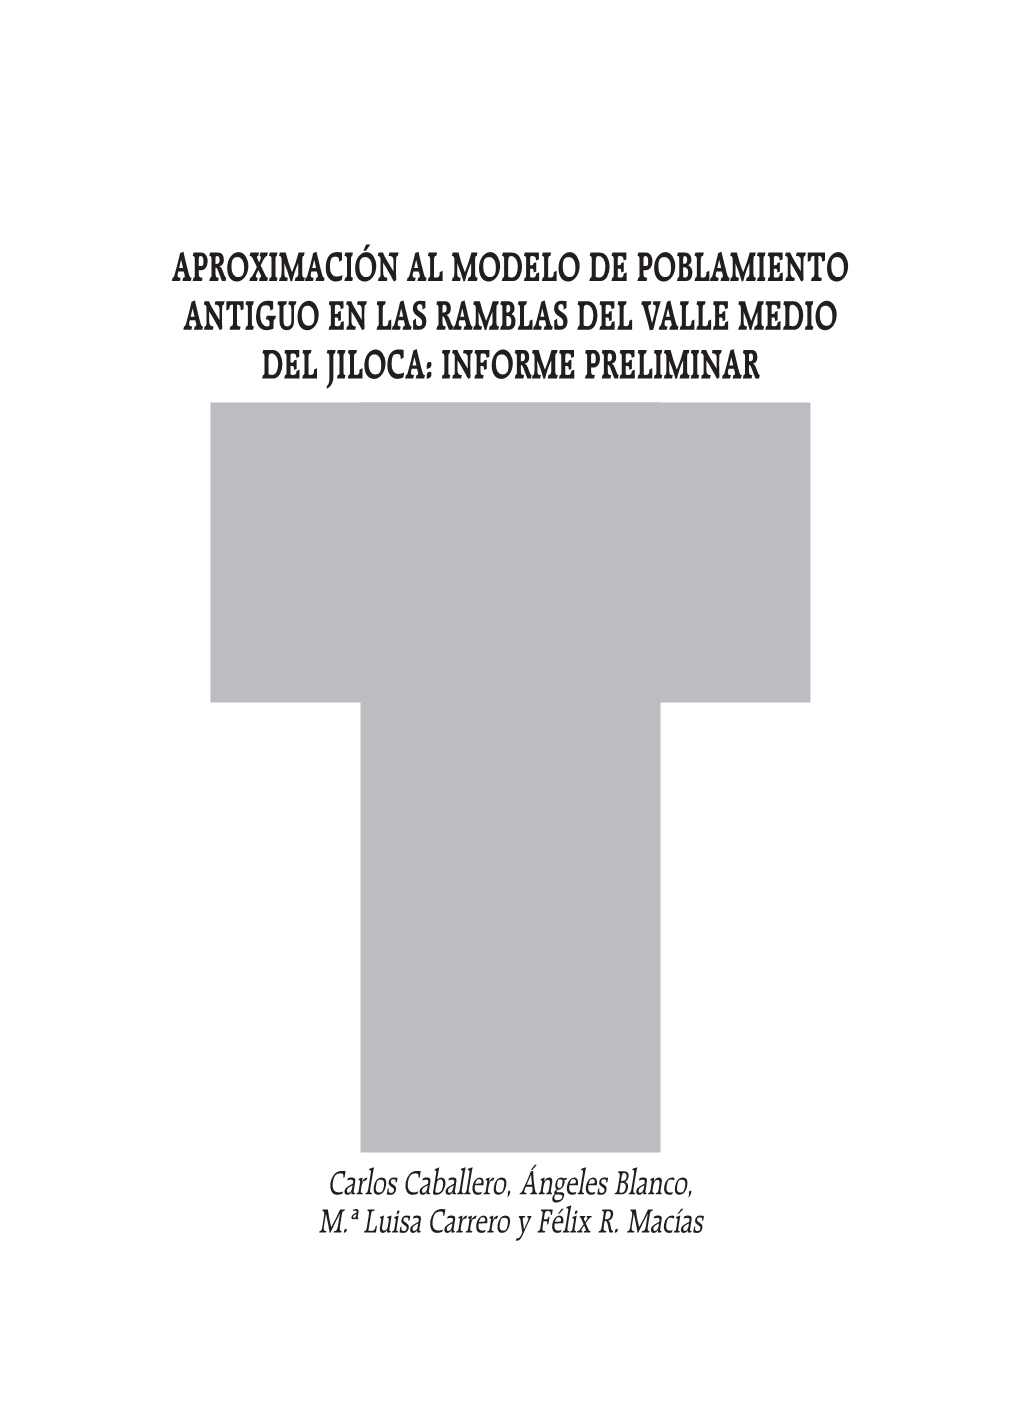 Aproximación Al Modelo De Poblamiento Antiguo En Las Ramblas Del Valle Medio Del Jiloca: Informe Preliminar